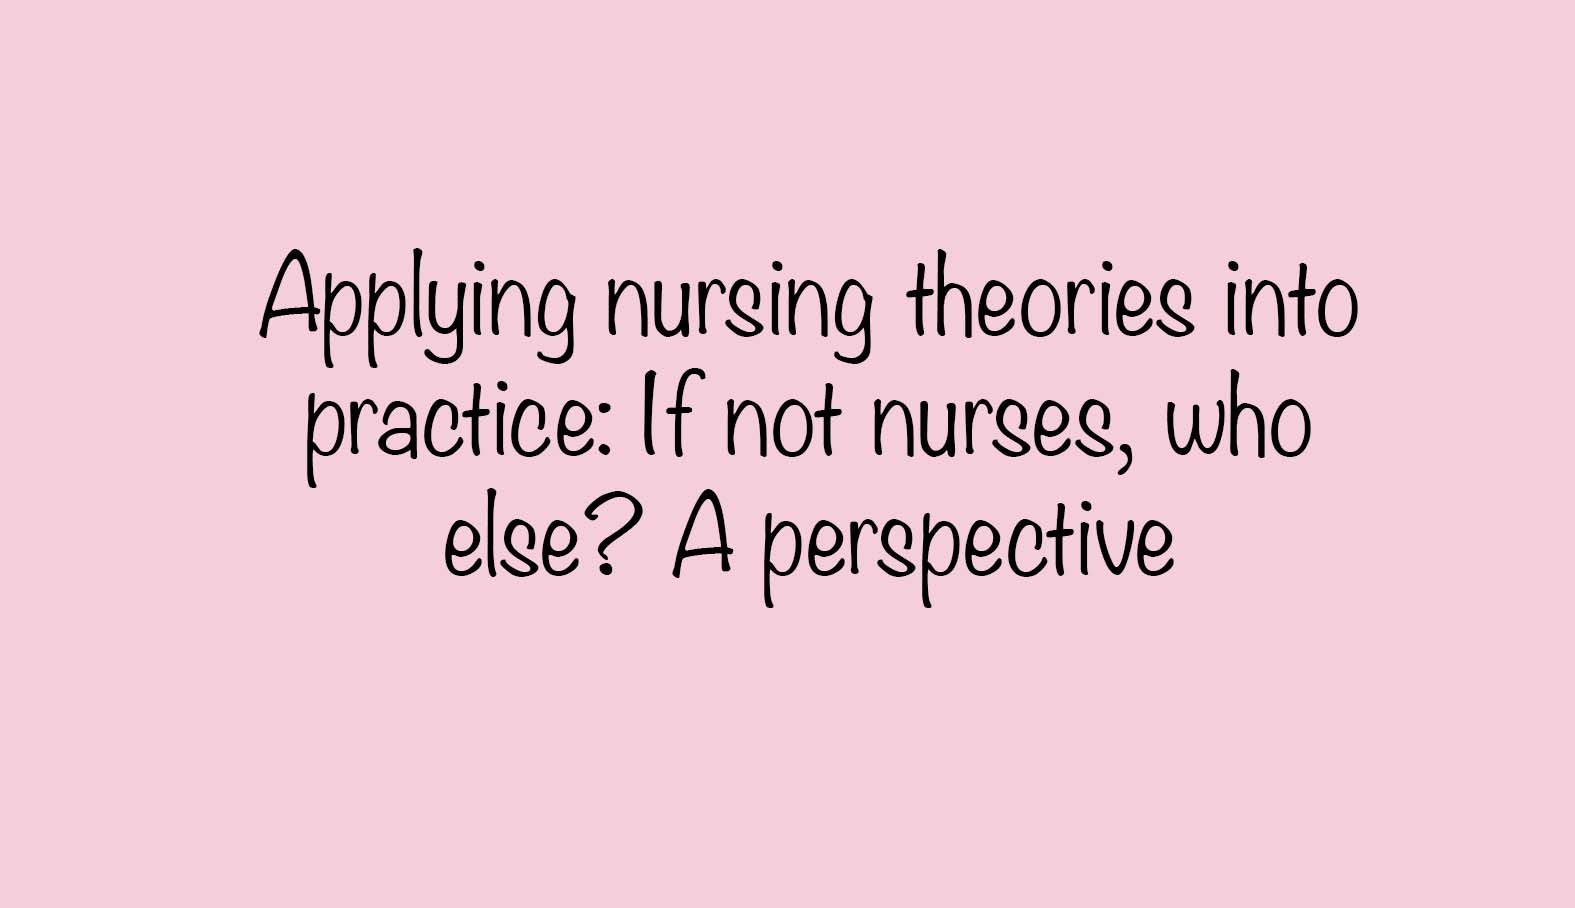 nursing profession quotes